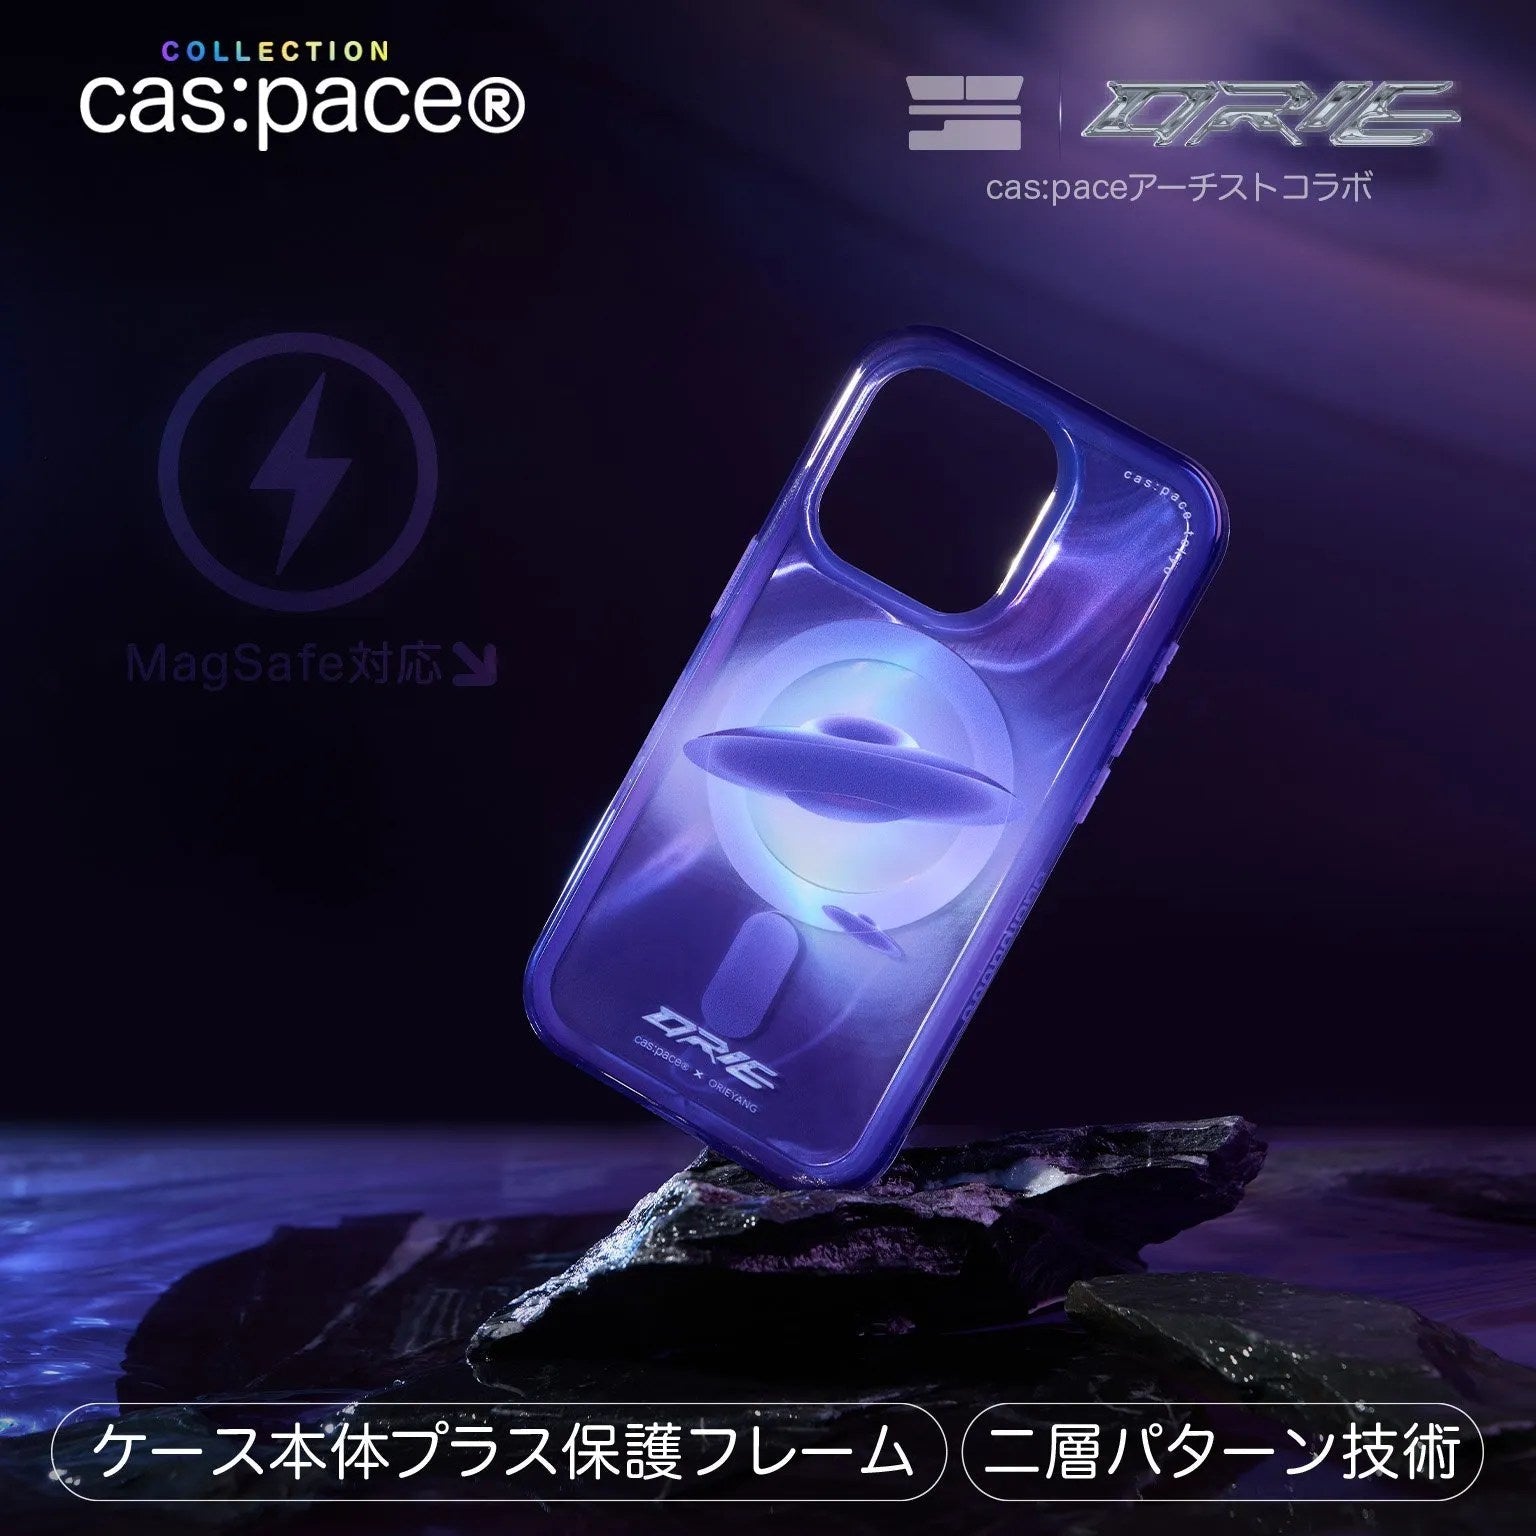 cas:pace x orieyang 24S/S「raum」携帯ケース - cas:pace 殼空間